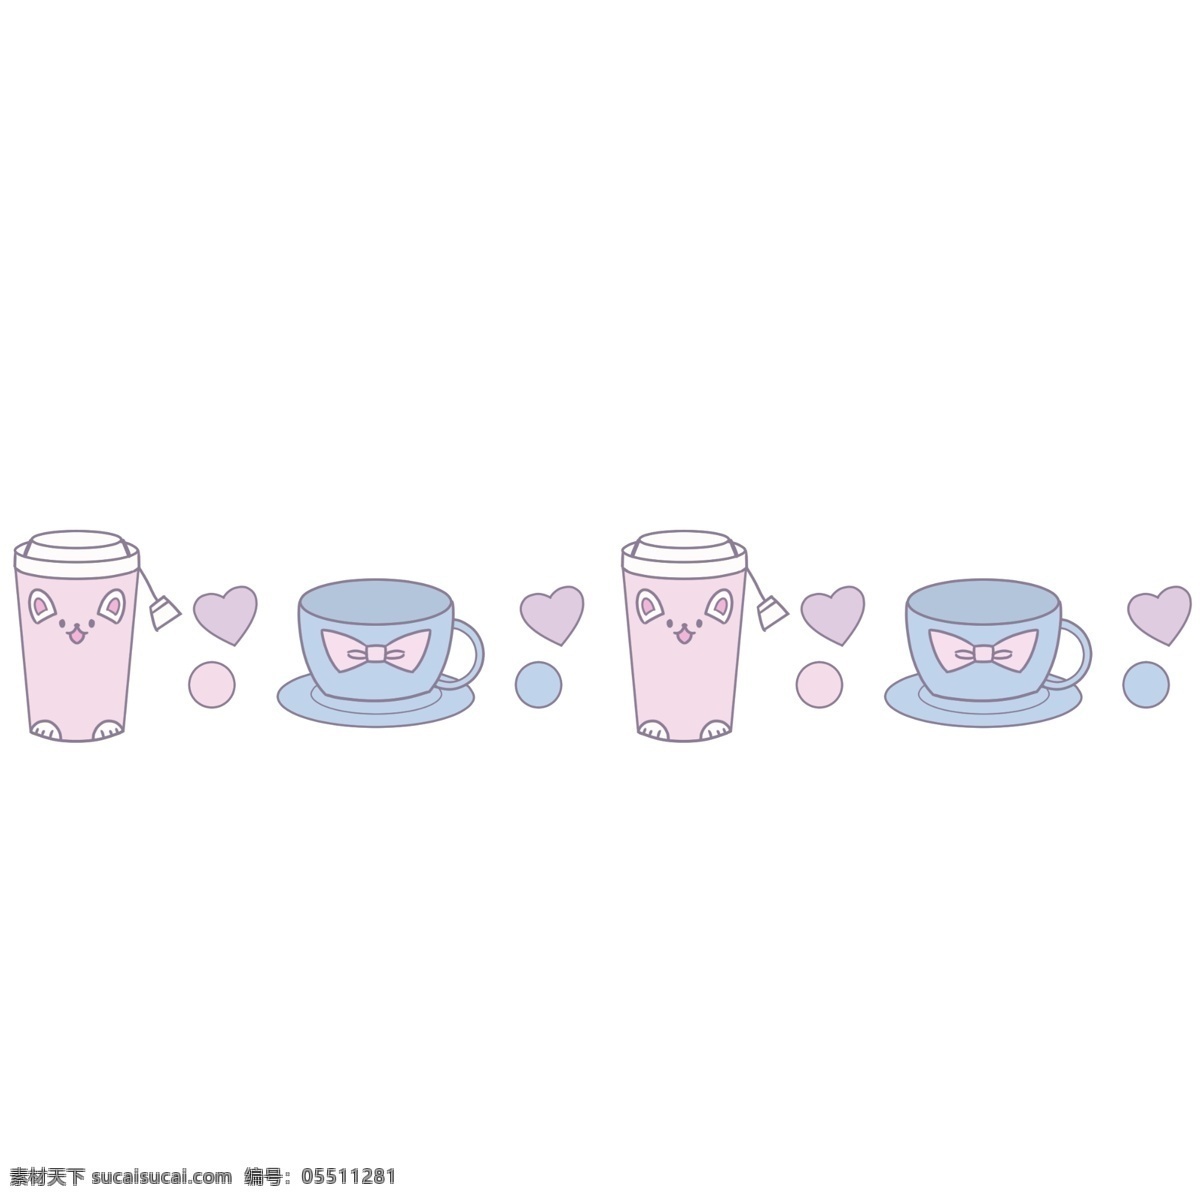 茶杯 分割线 手绘 插画 茶杯分割线 可爱 爱心 卡通 装饰